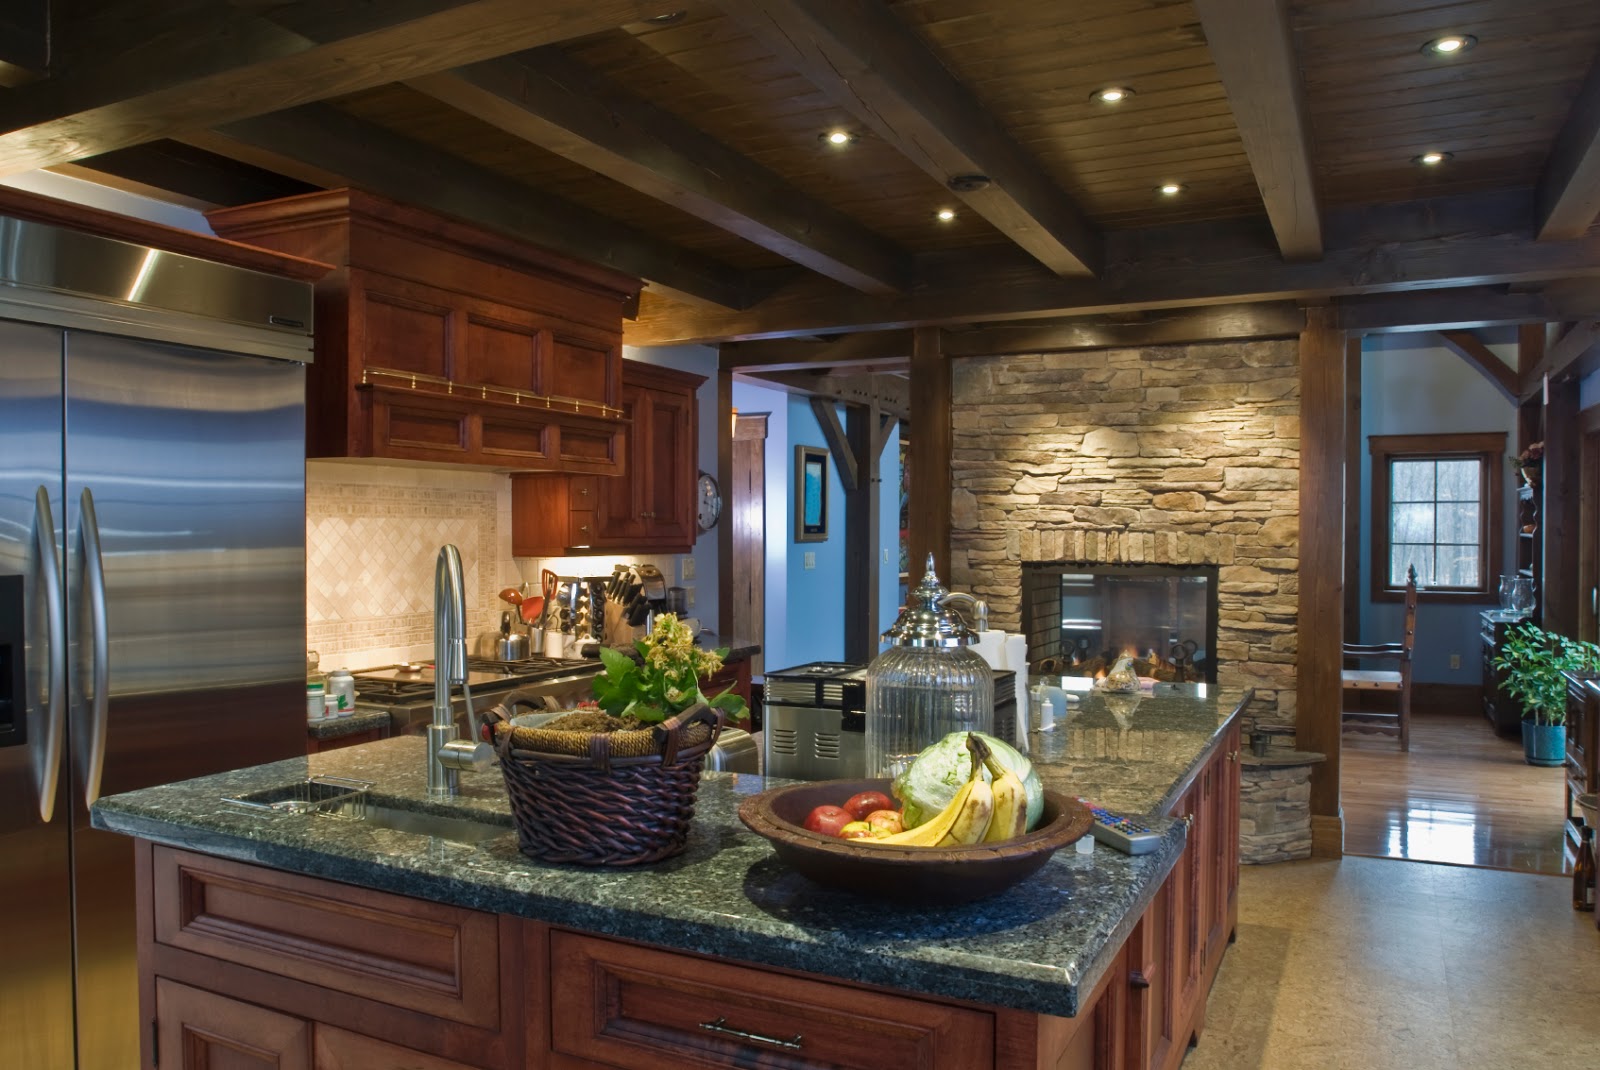  Desain  Interior  Dapur  Dengan Perabotan Kayu  Dominan Warna 